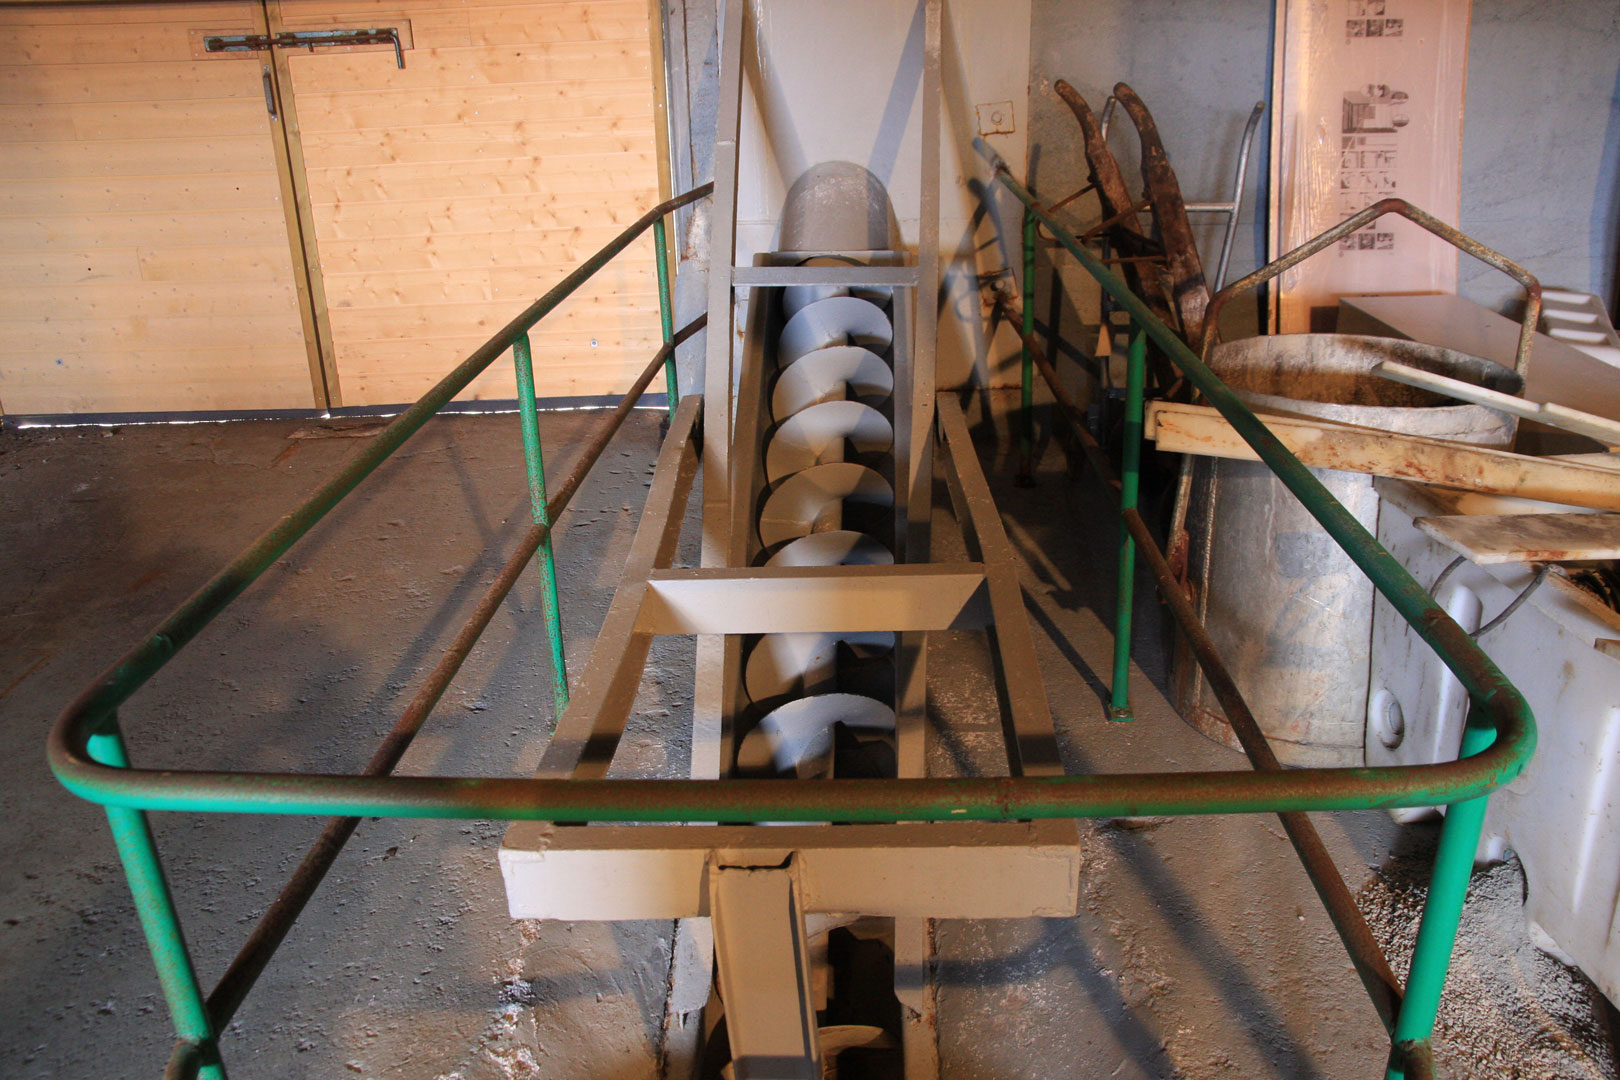 Skrupressen ble blant annet brukt for å transportere sild eller andre råvarer fra mottaket via transportører til råstofftanker for videreforedling. Foto: Ulf I. Gustafsson Riksantikvaren